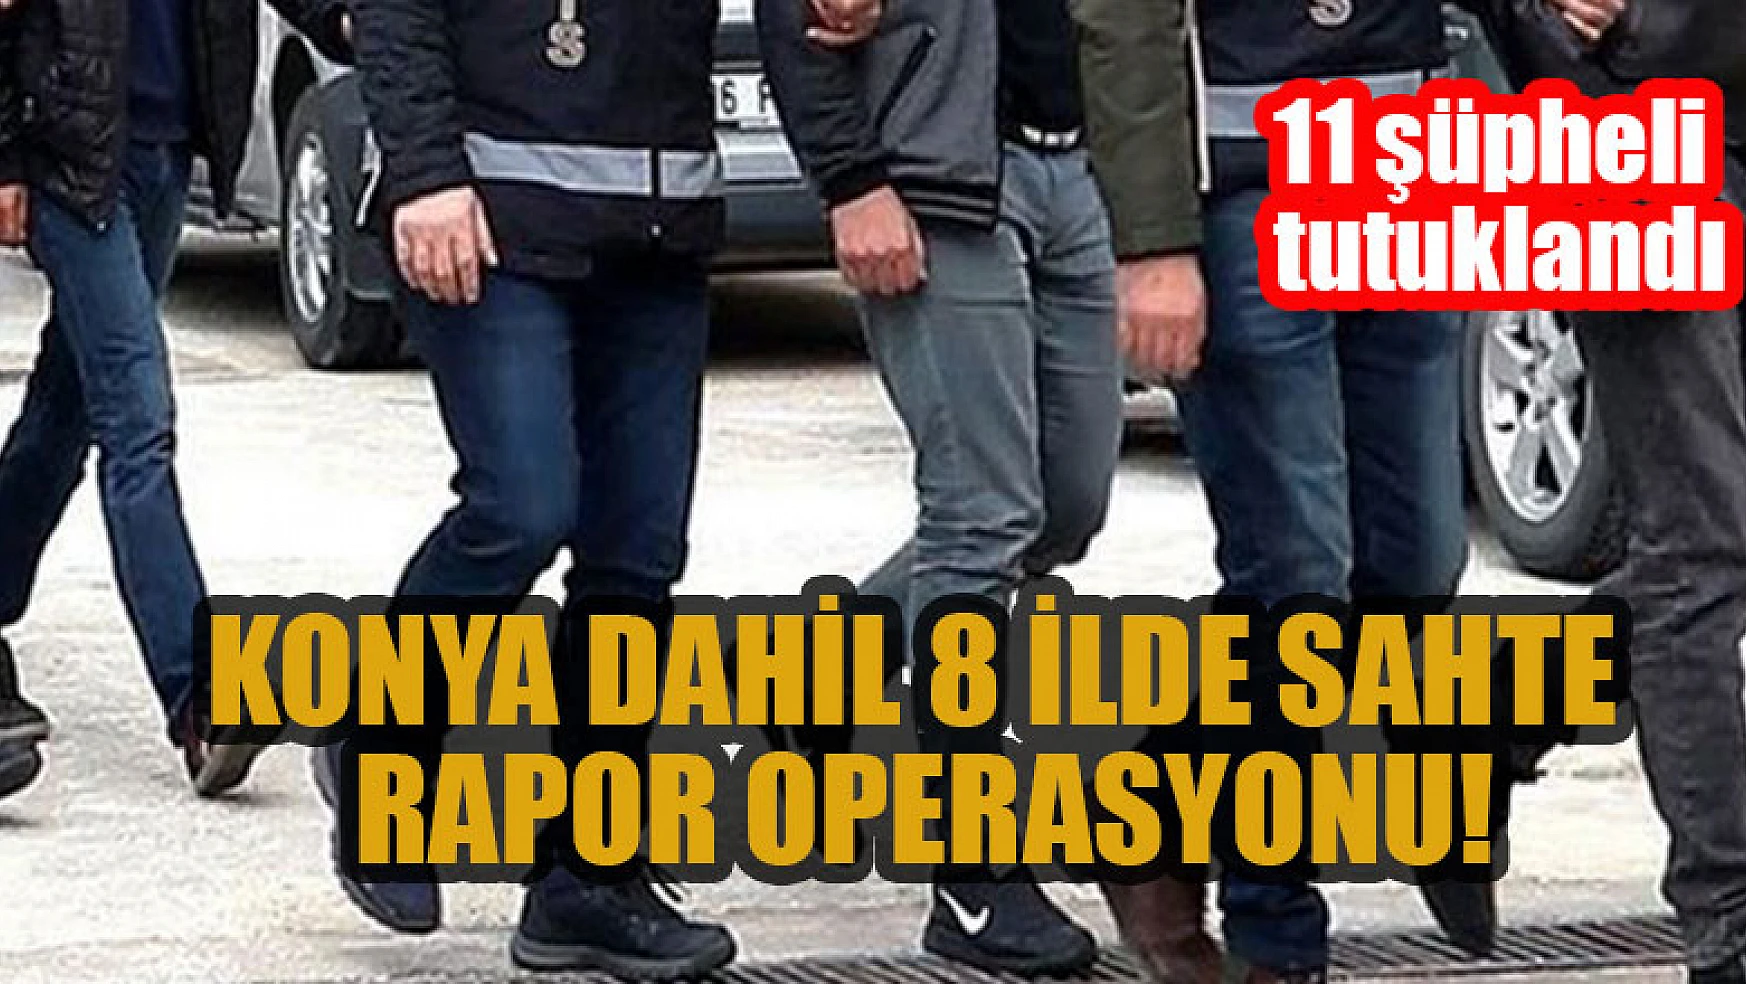 Konya dahil 8 ilde sahte rapor operasyonu: 11 şüpheli tutuklandı